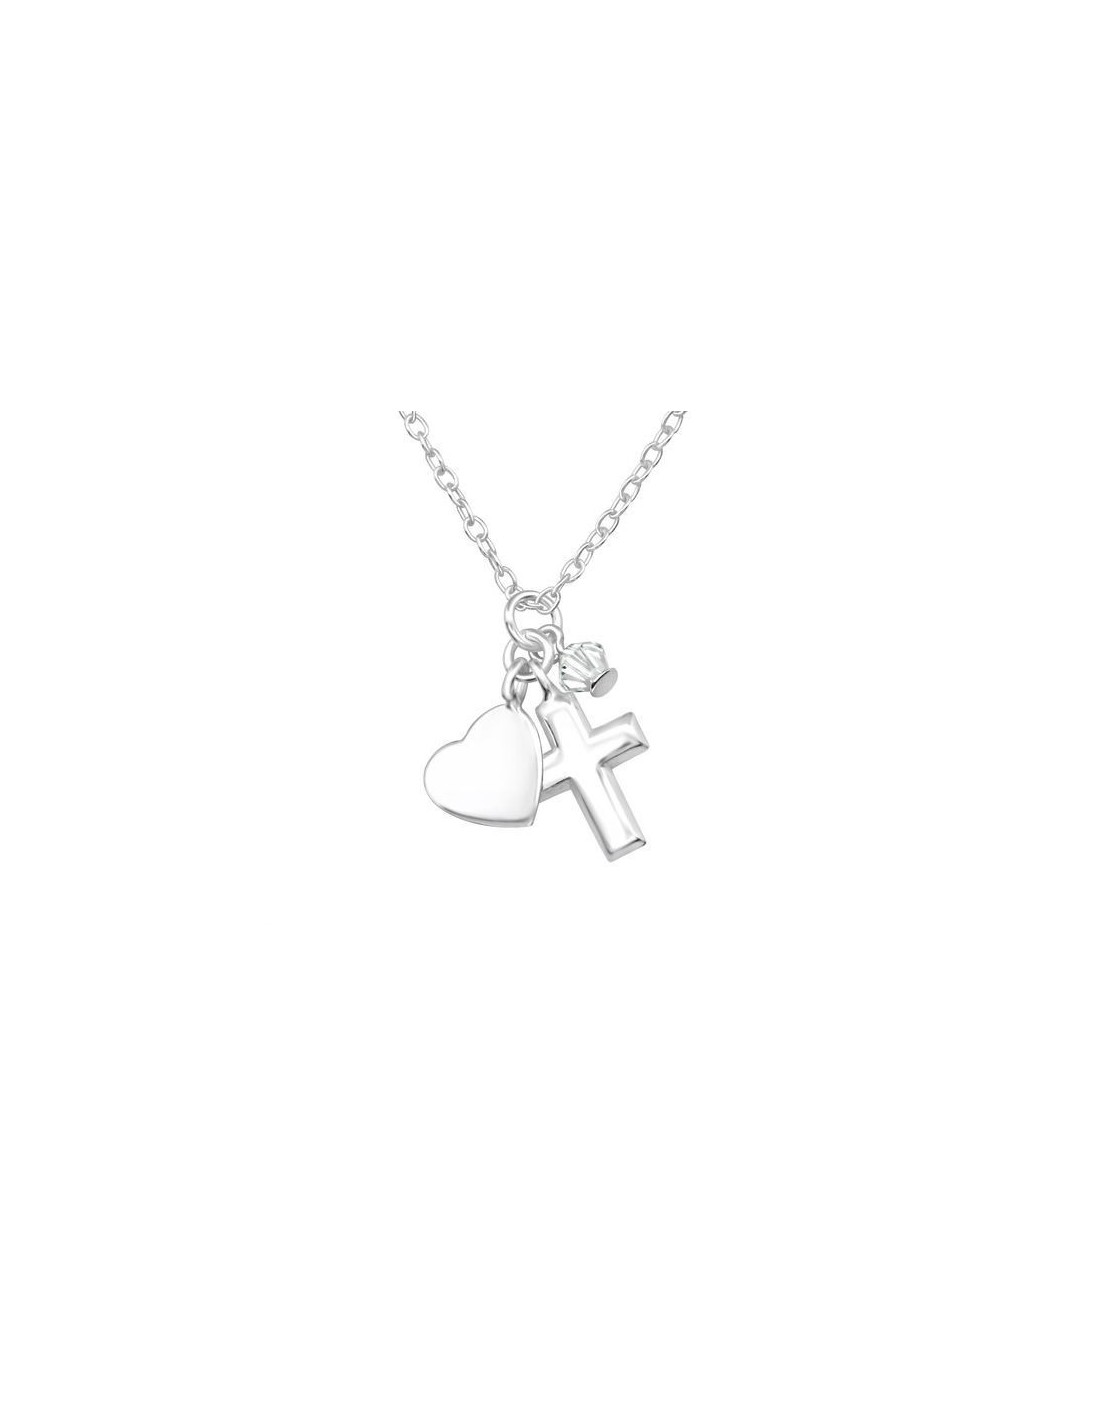 Attract Swarovski Necklace - Jewelry Online Grau